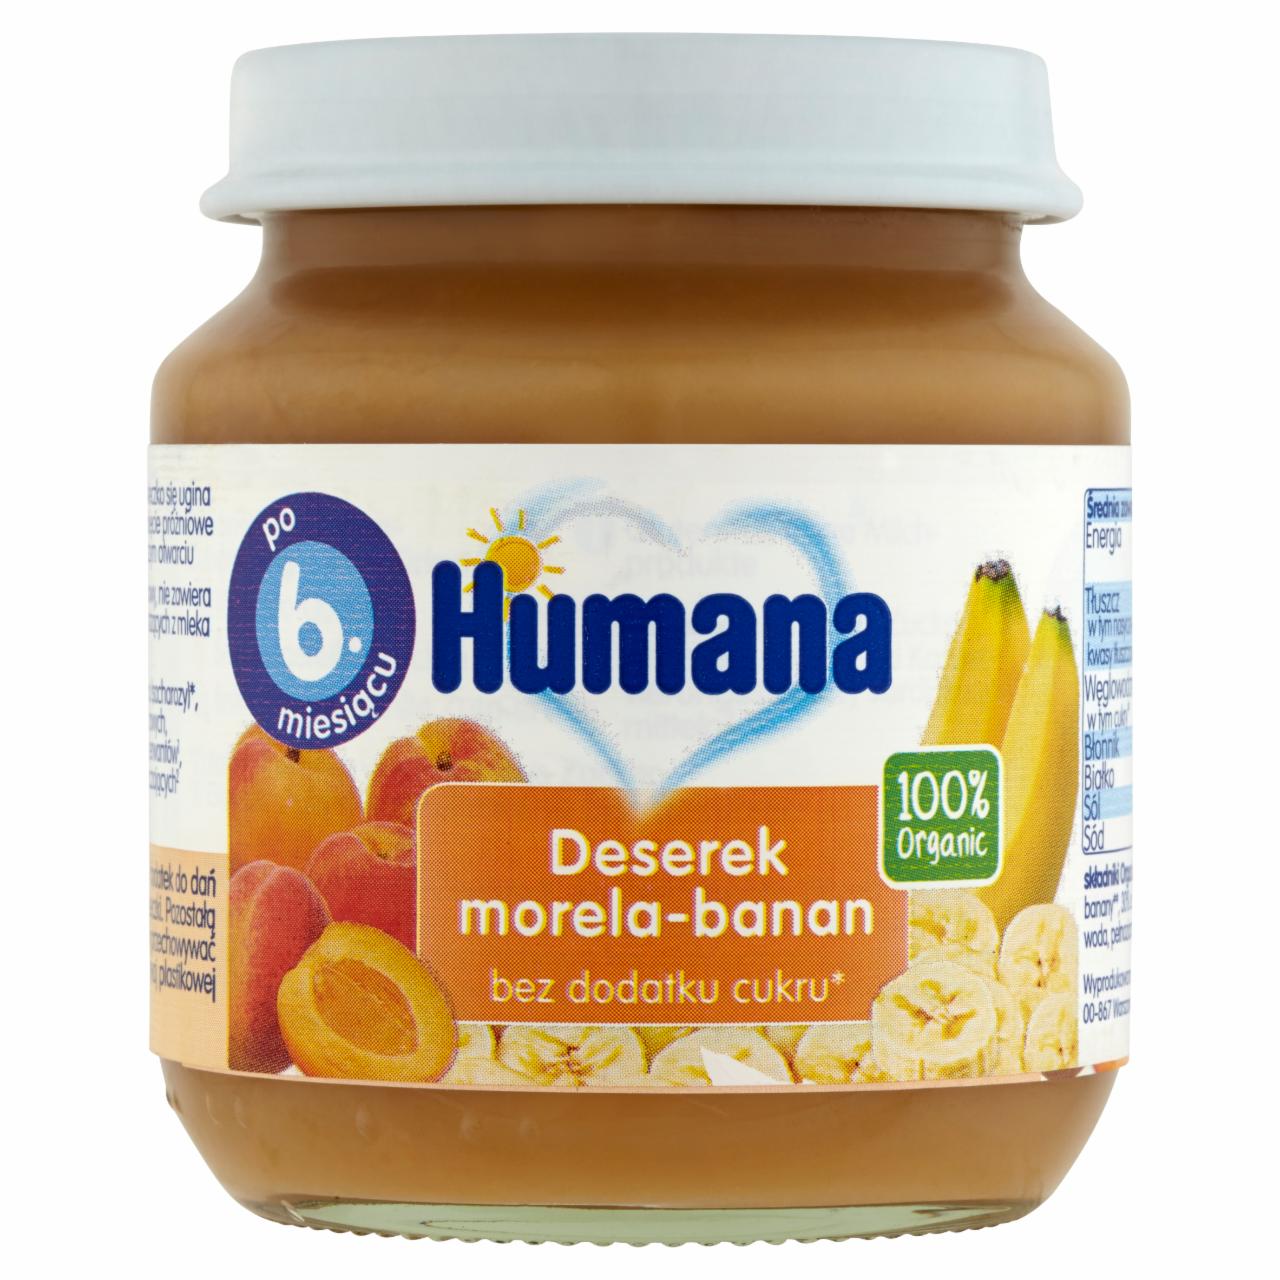 Zdjęcia - Humana 100% Organic Deserek morela-banan po 6. miesiącu 125 g